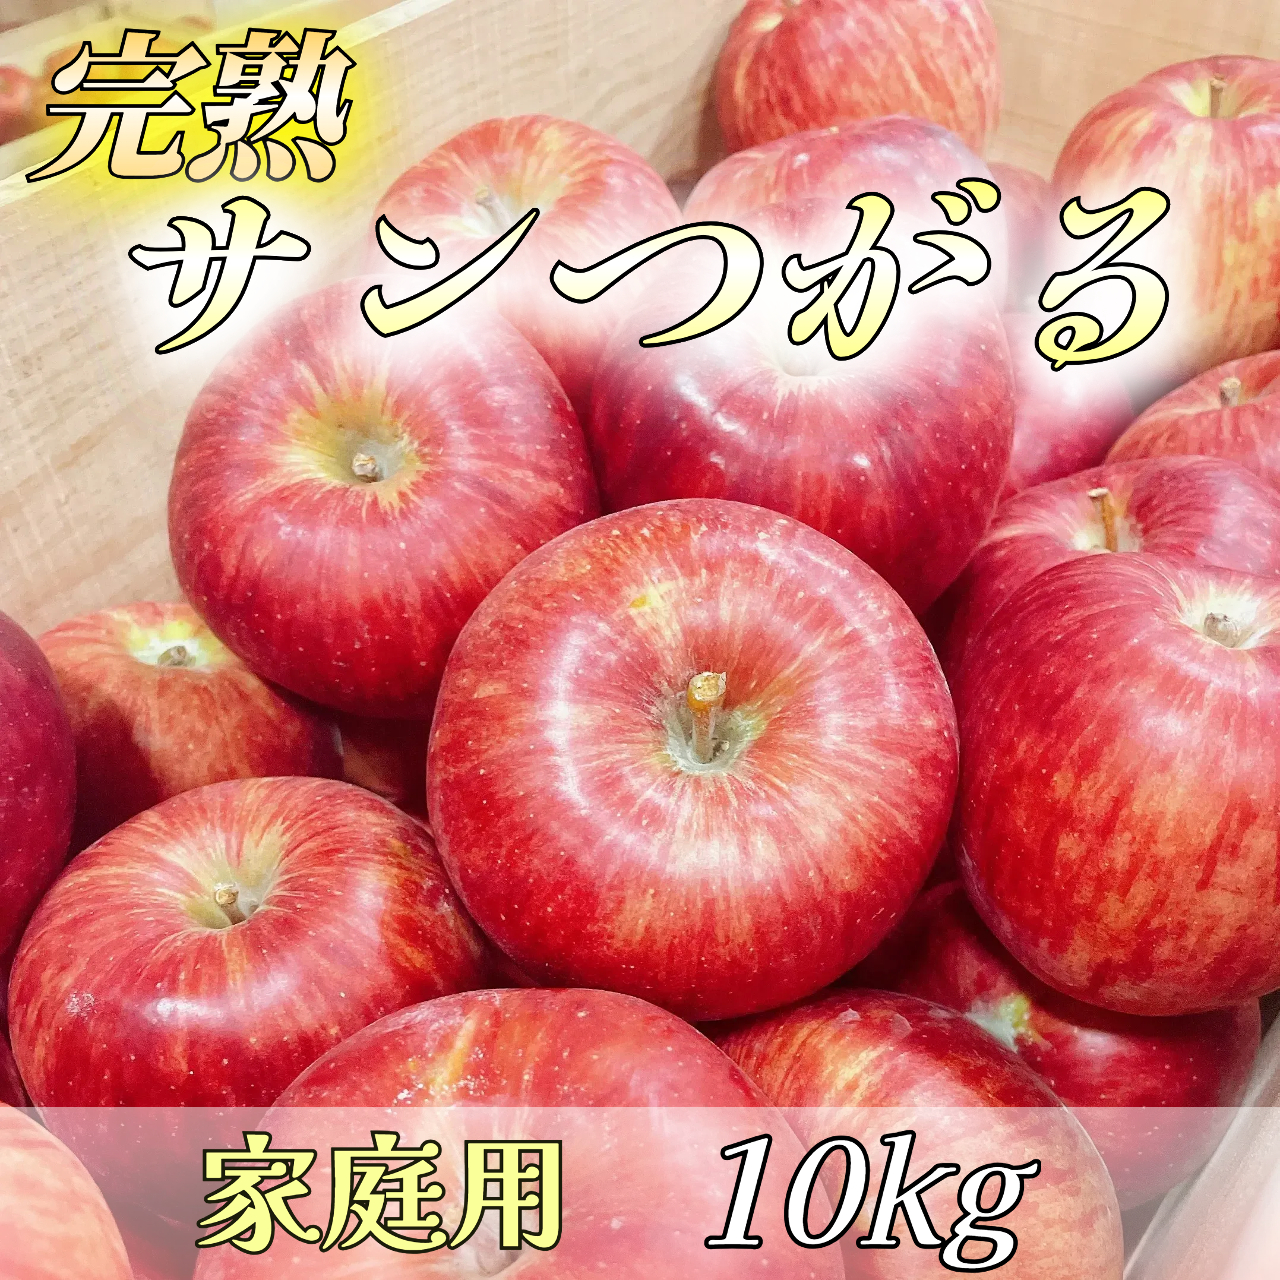  りんご 信州産 長野県産 サンつがる 5kg 10玉 林檎